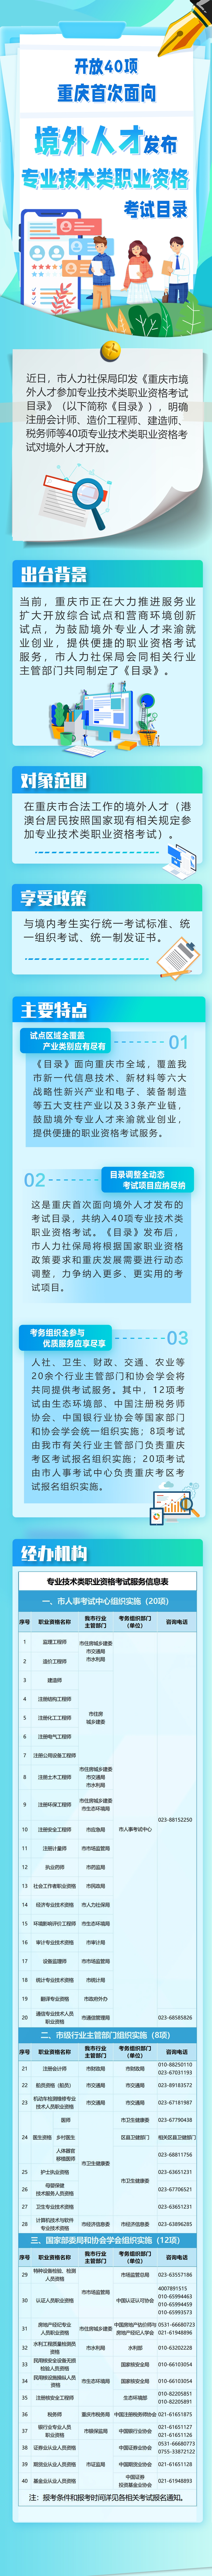 重庆首次面向境外人才发布专业技术类职业资格考试目录